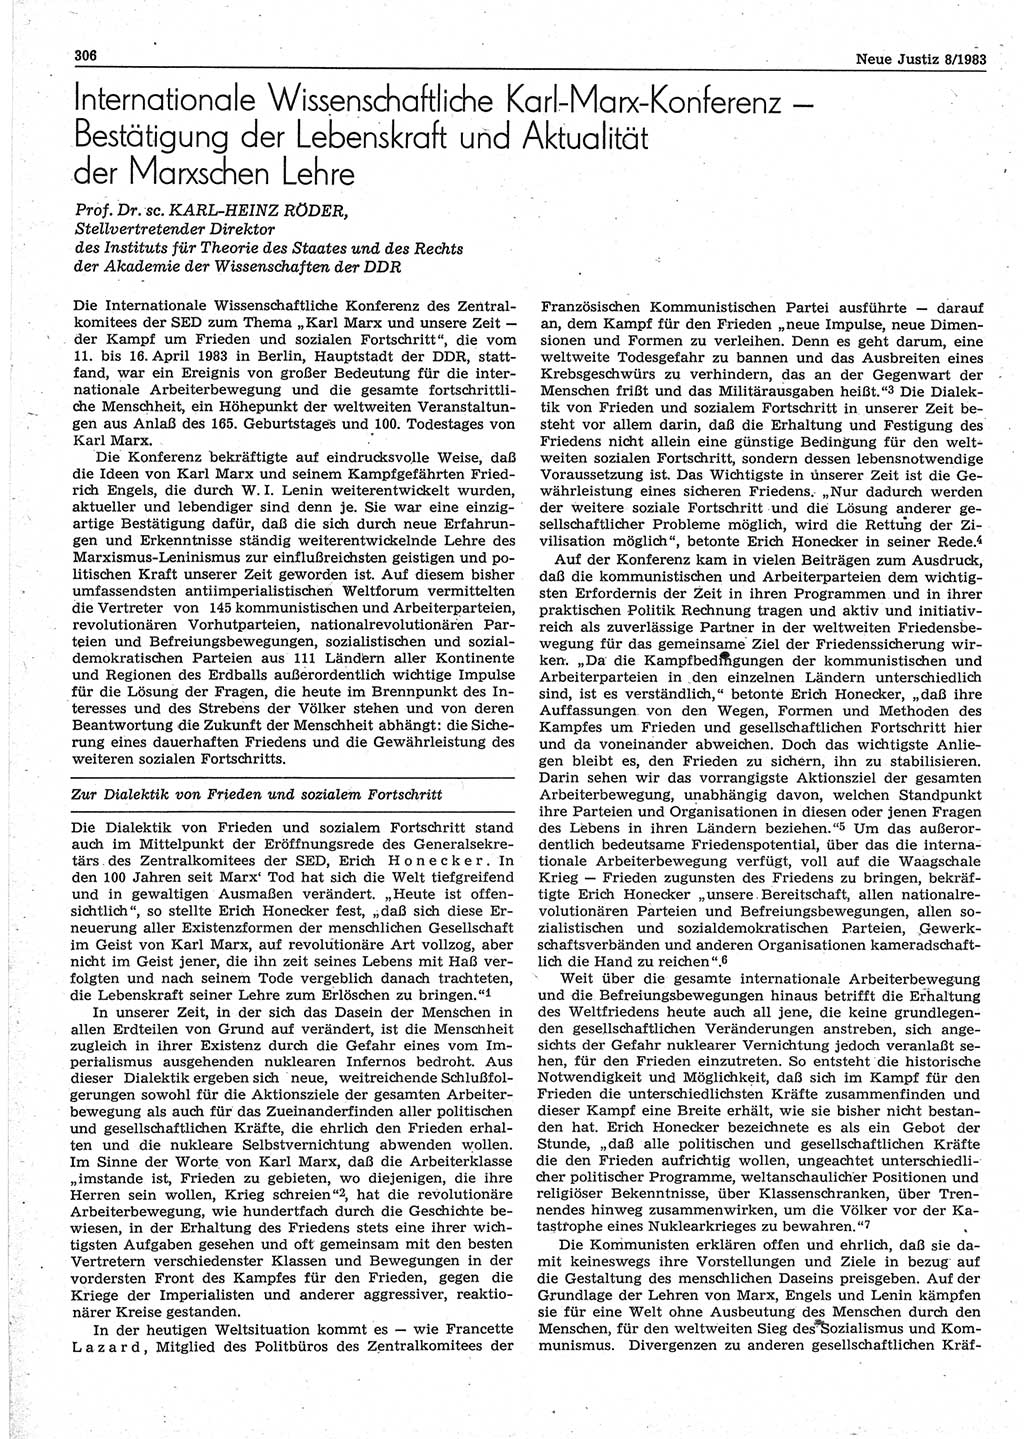 Neue Justiz (NJ), Zeitschrift für sozialistisches Recht und Gesetzlichkeit [Deutsche Demokratische Republik (DDR)], 37. Jahrgang 1983, Seite 306 (NJ DDR 1983, S. 306)